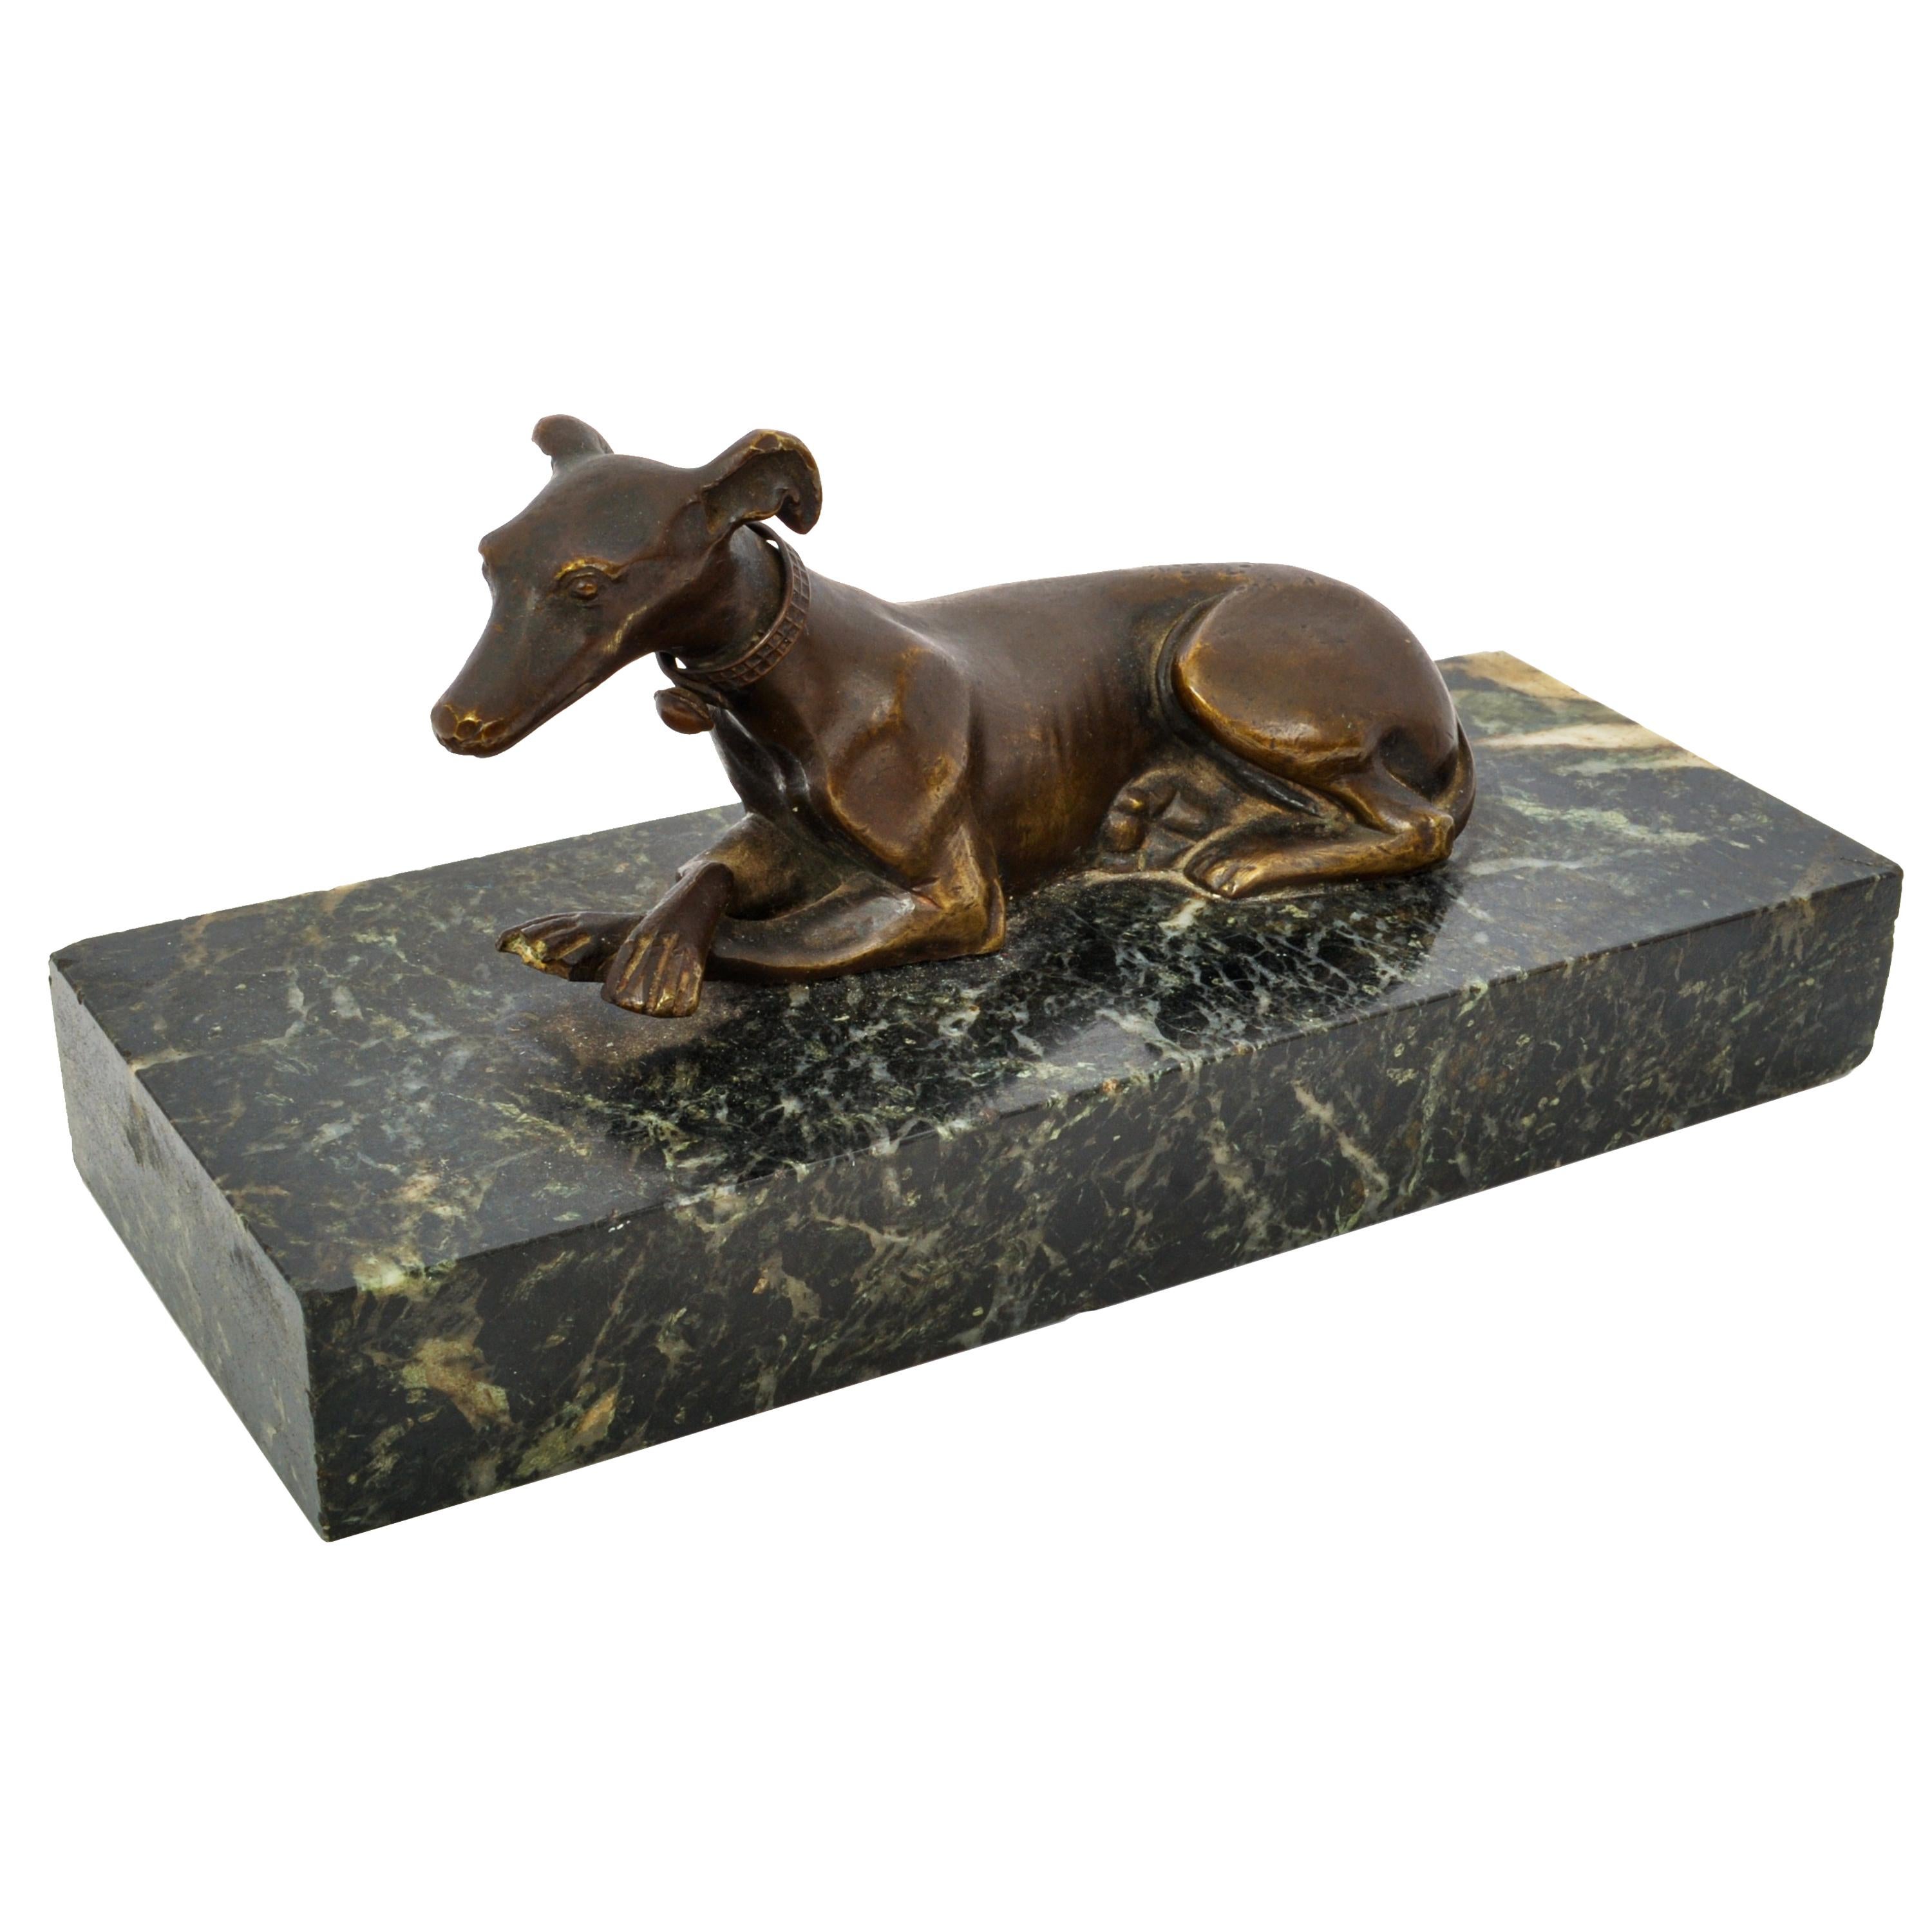 Eine sehr hübsche antike französische Animalier Bronze Windhund Skulptur, Briefbeschwerer, um 1900.
Die Bronze im Stil von Emmanuel Fremiet ist aus massivem Bronzeguss im Wachsausschmelzverfahren (Cire Perdue) hergestellt und stellt einen liegenden